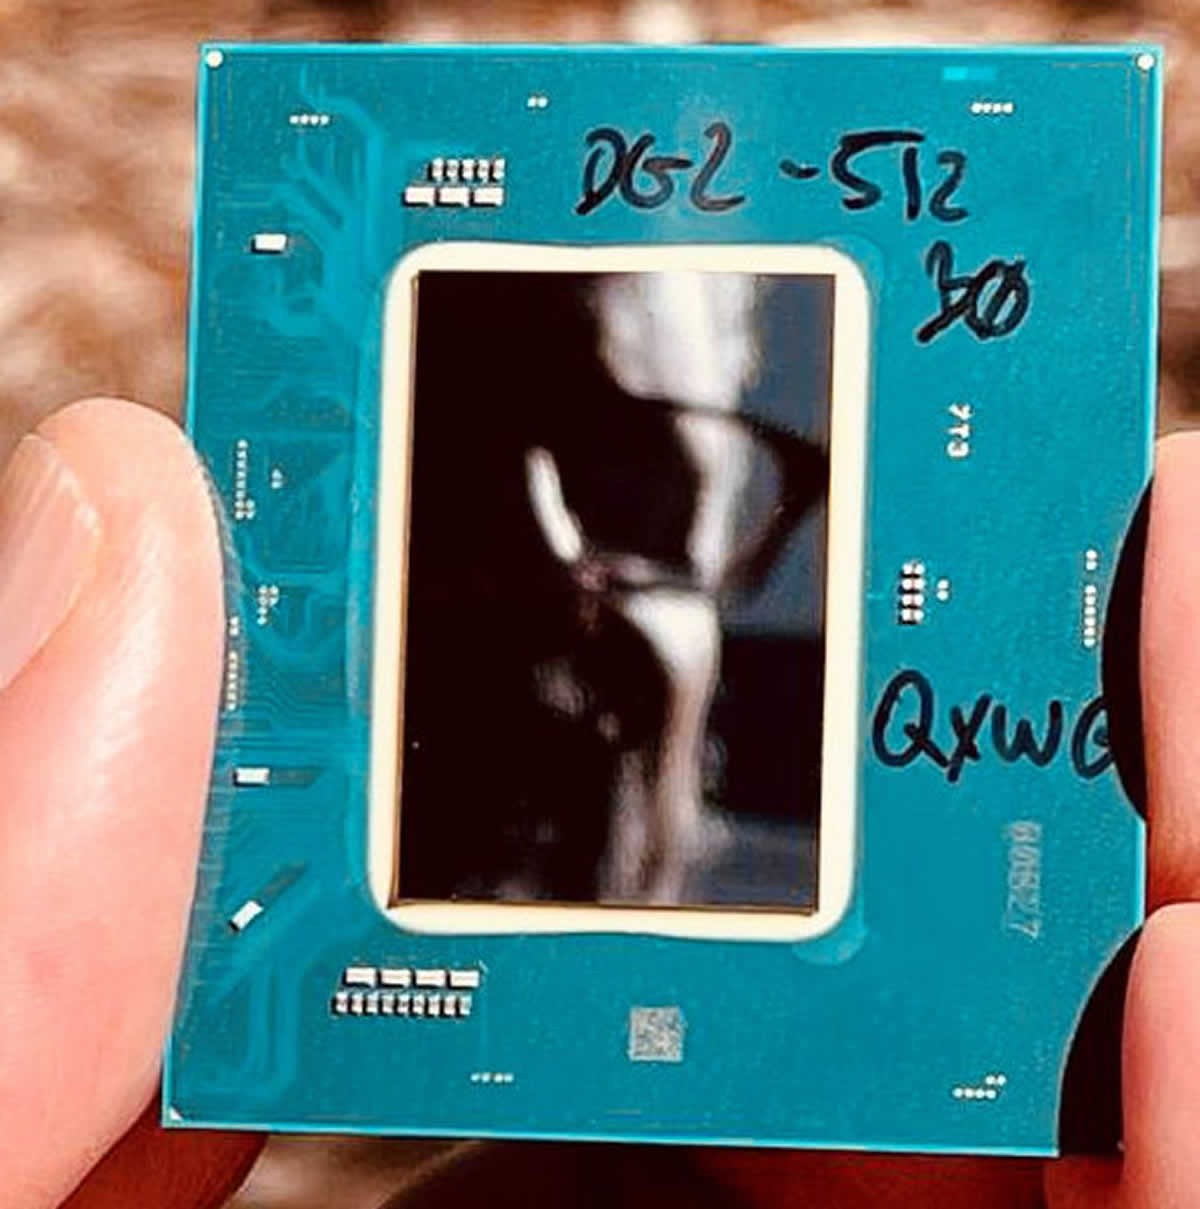 Voilà une première image du GPU Intel DG2-512 avec ses 4096 SP